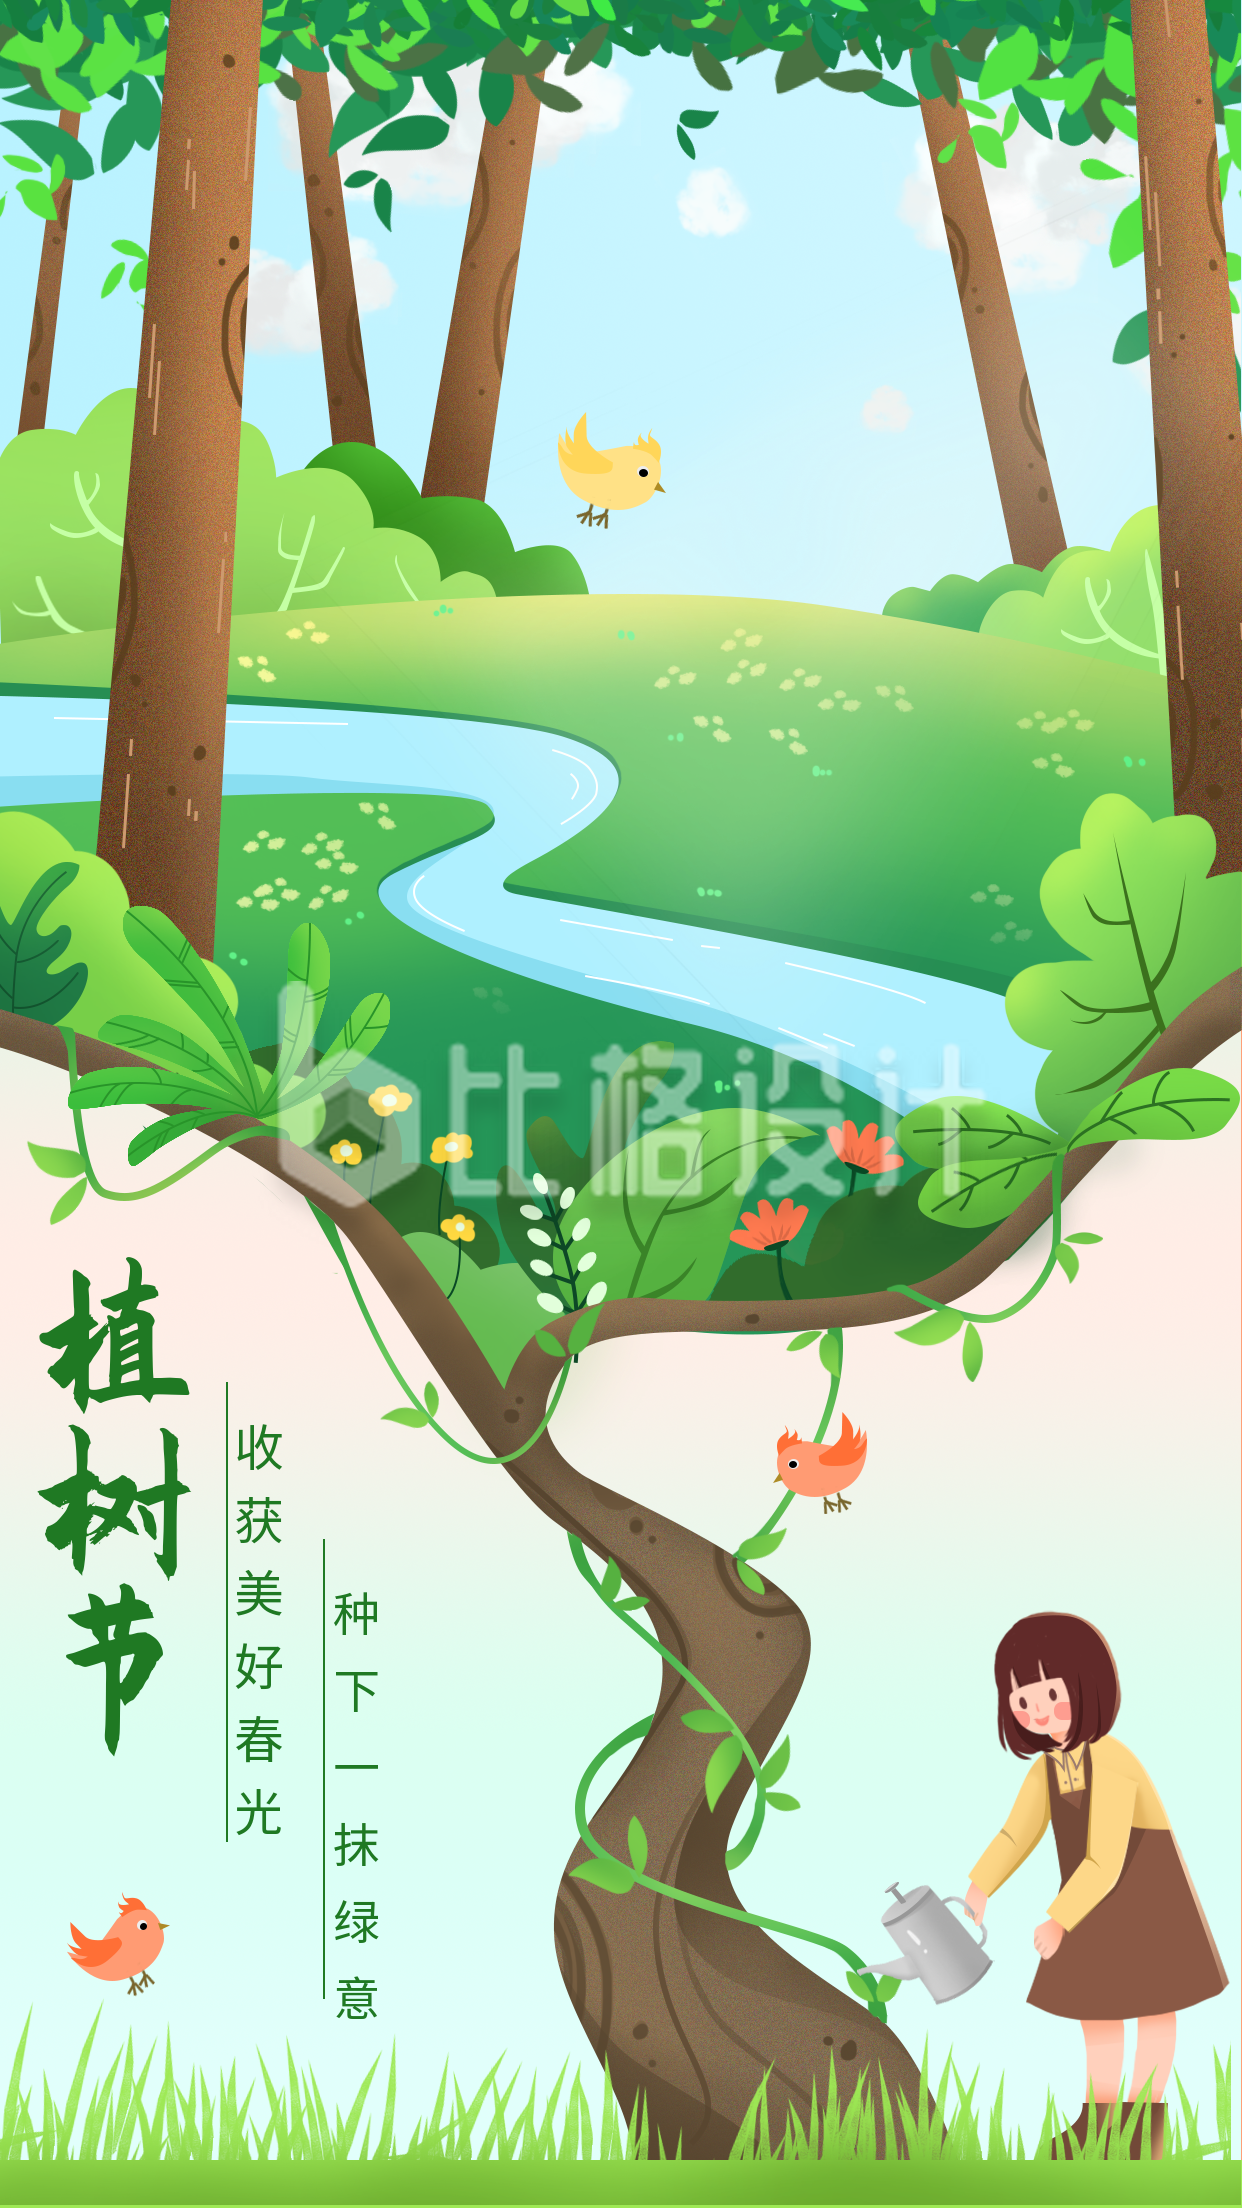 绿色手绘风植树节宣传手机海报